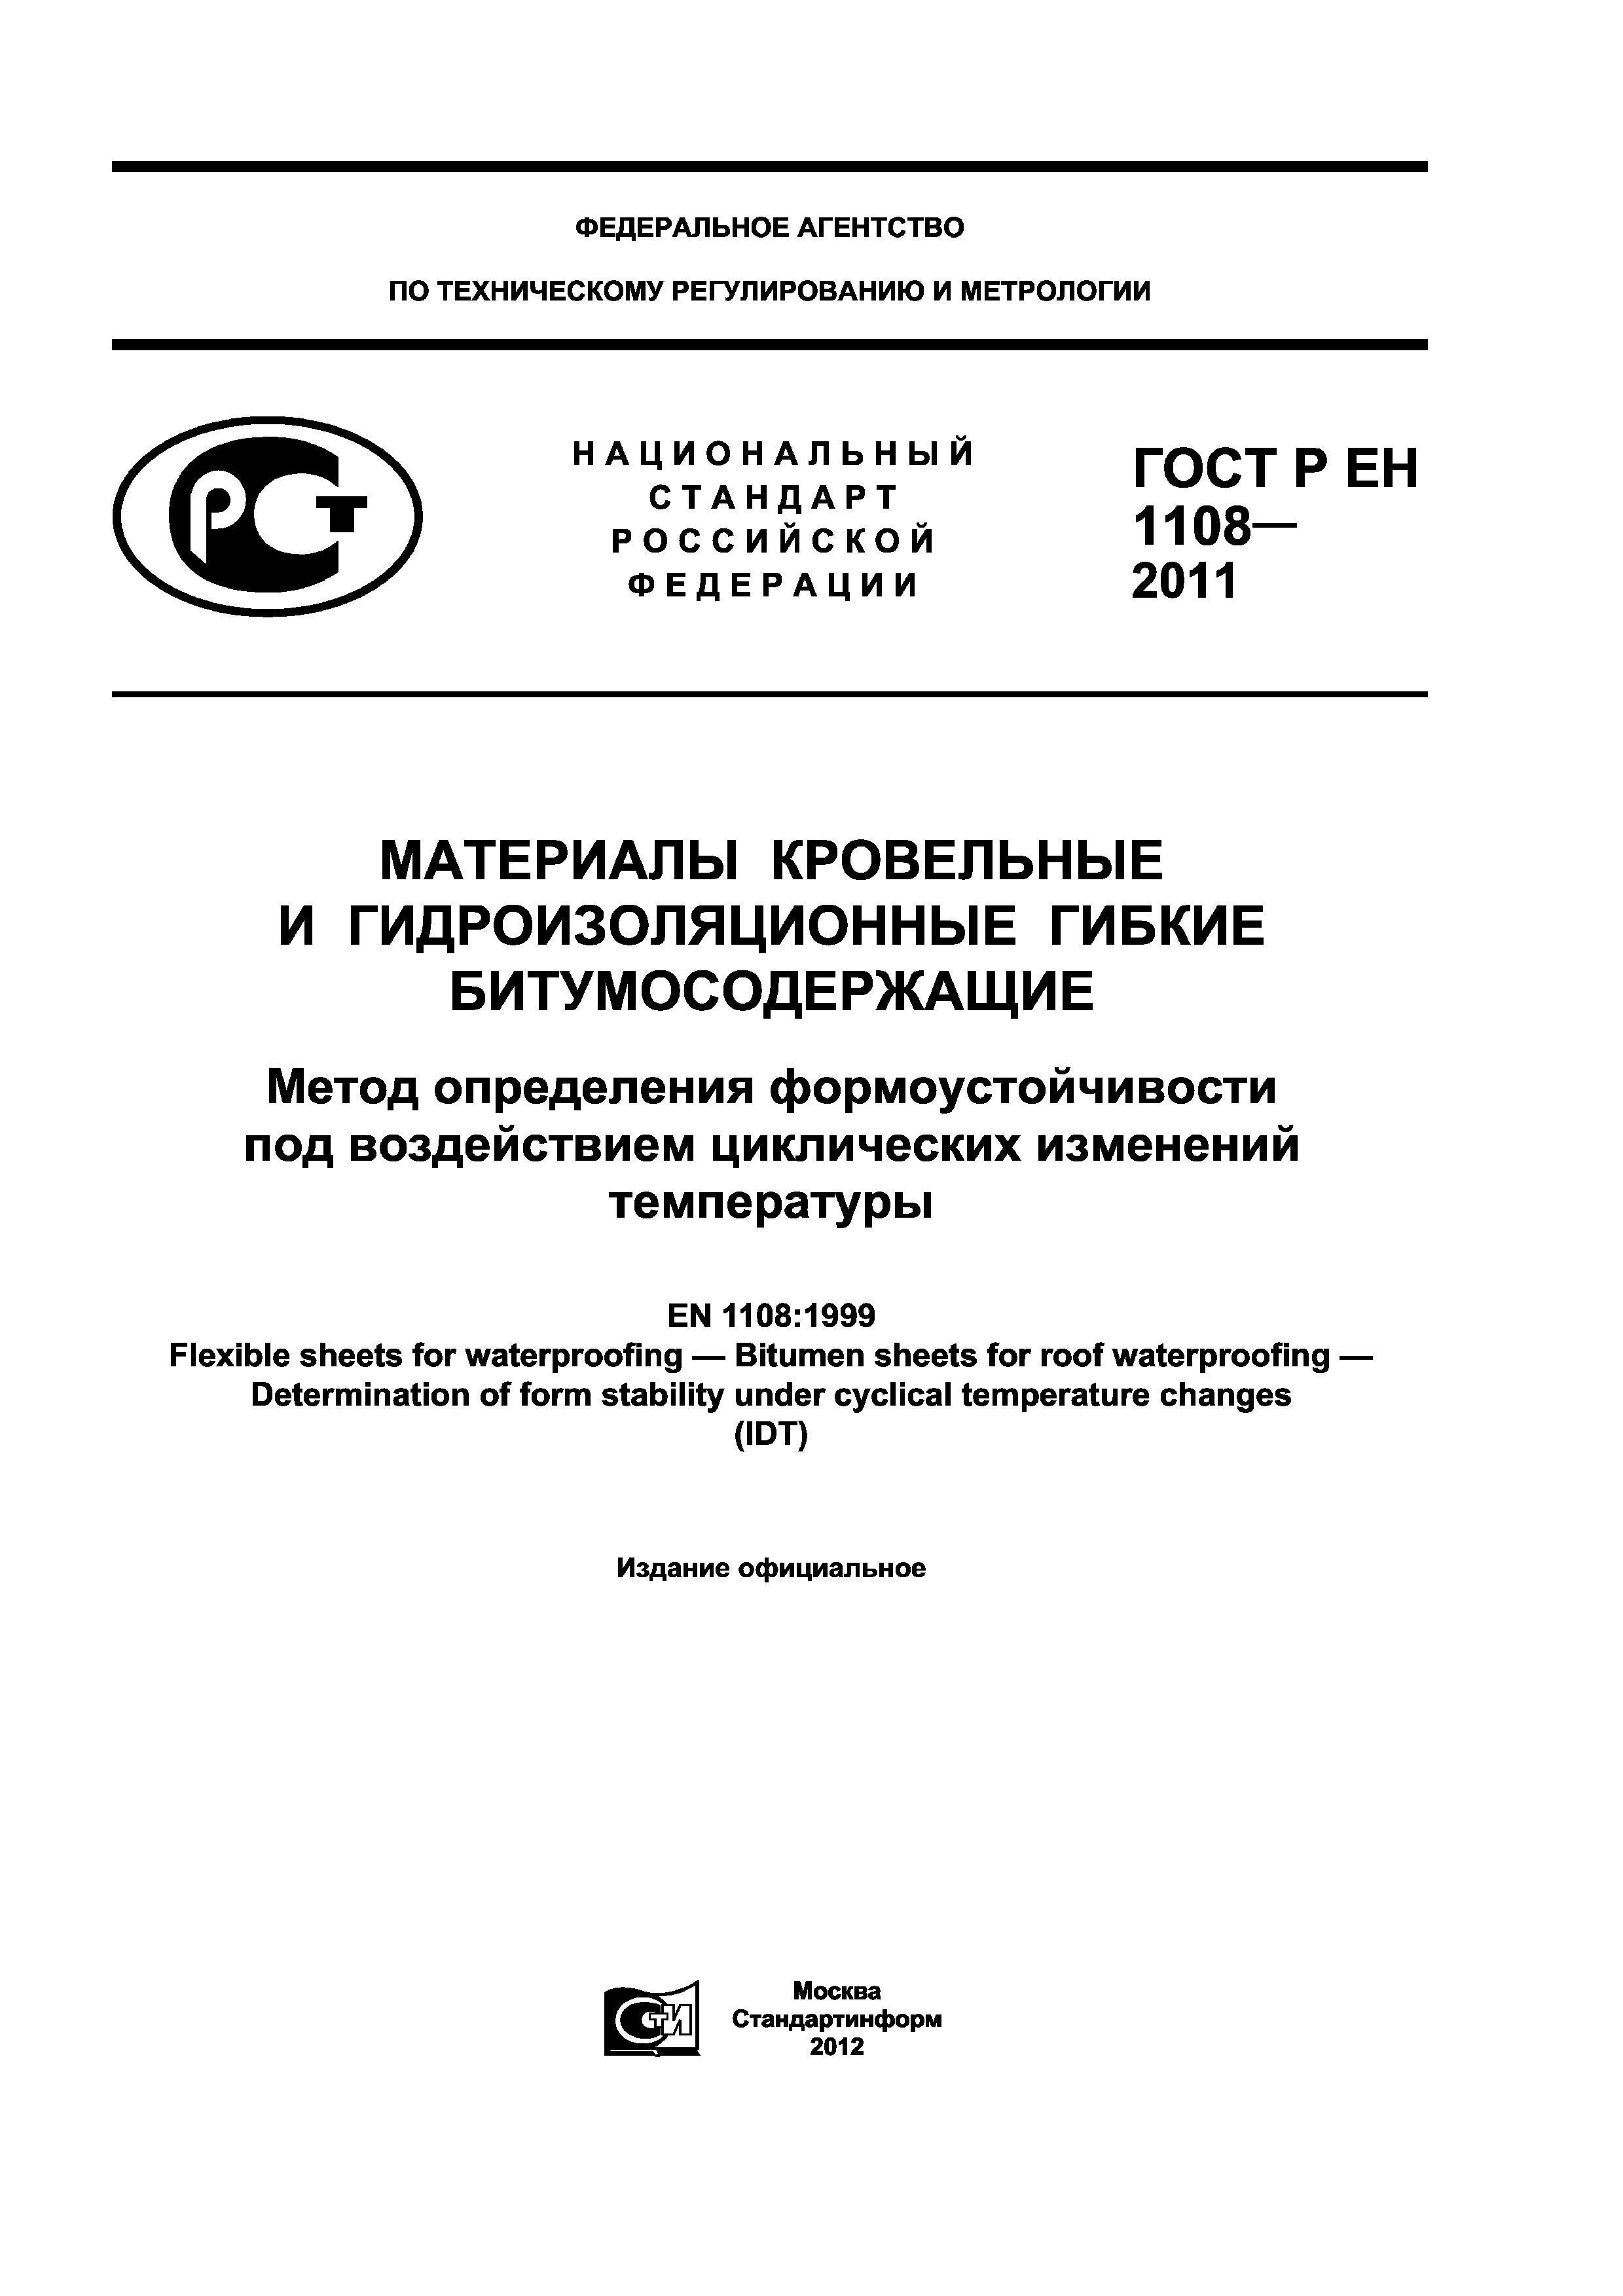 ГОСТ Р ЕН 1108-2011